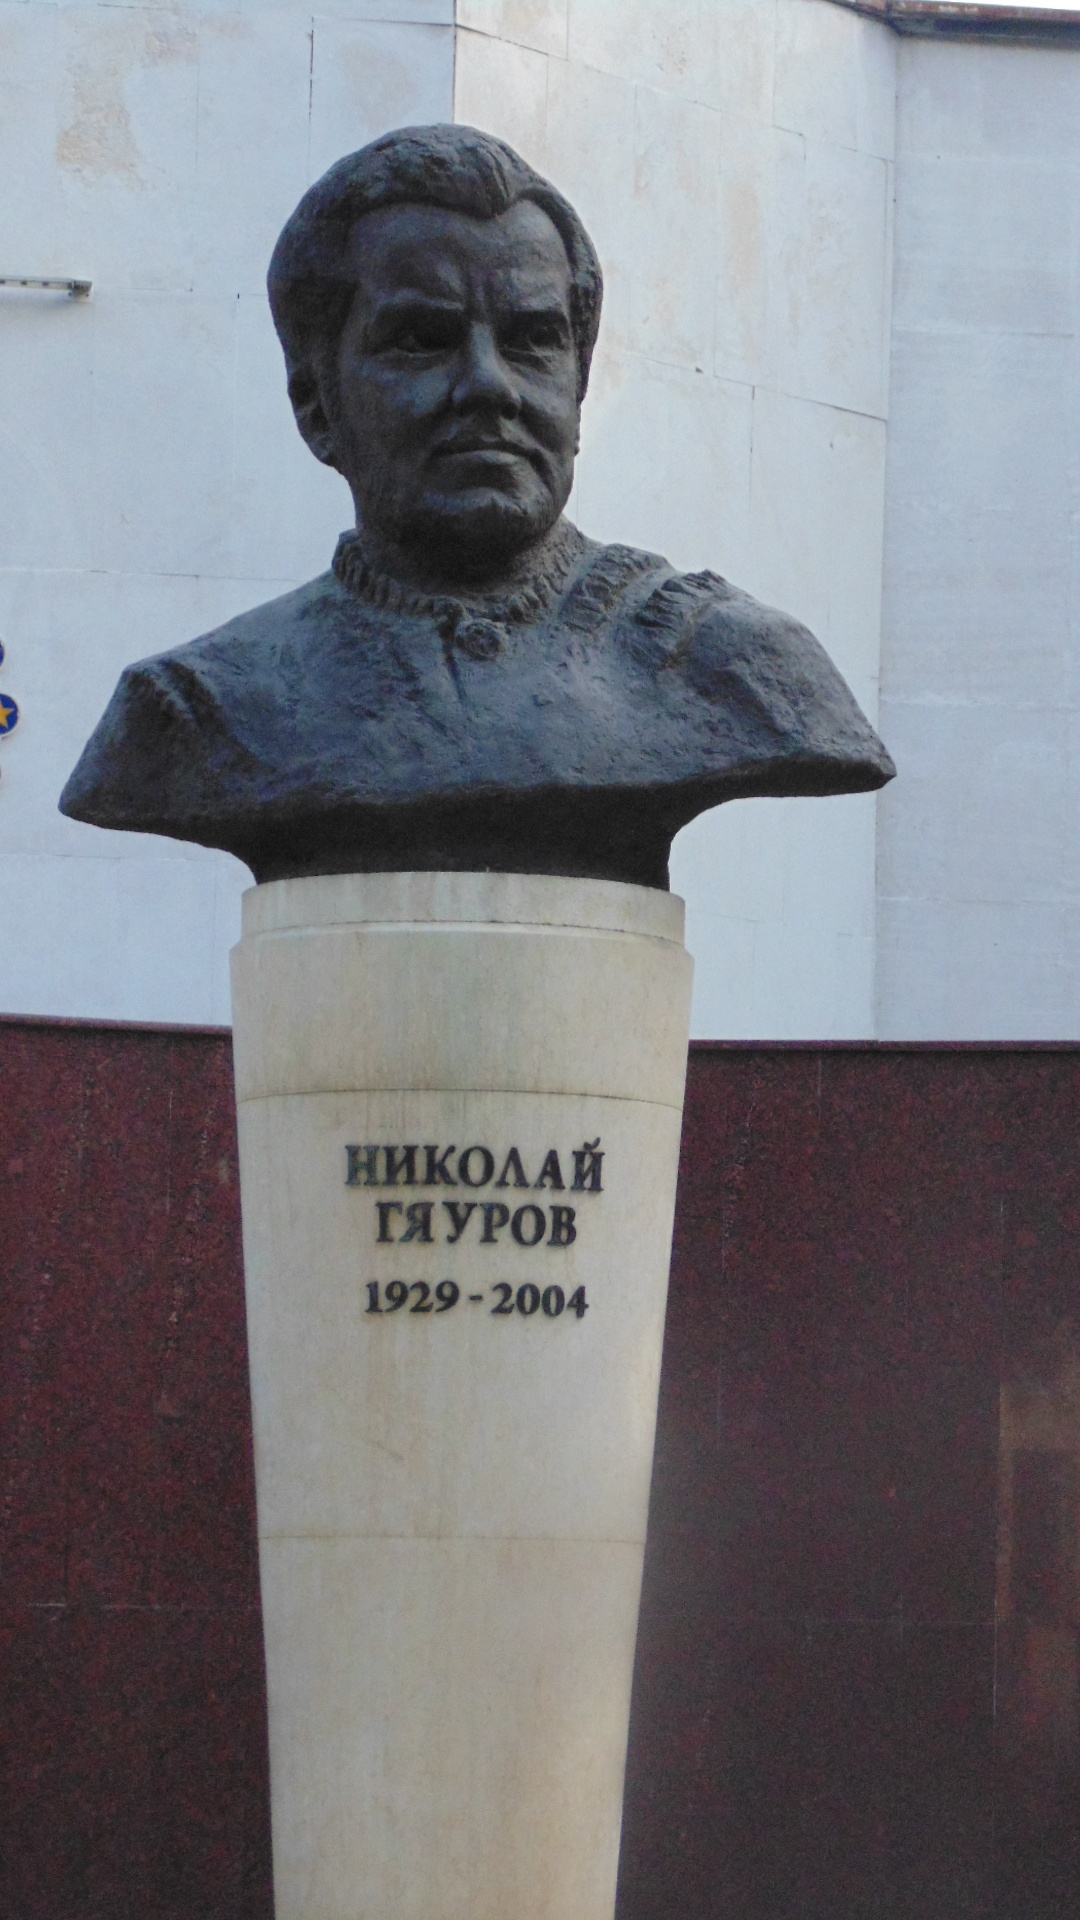 Николай Гяуров (ნიკოლაი გიაუროვი) |